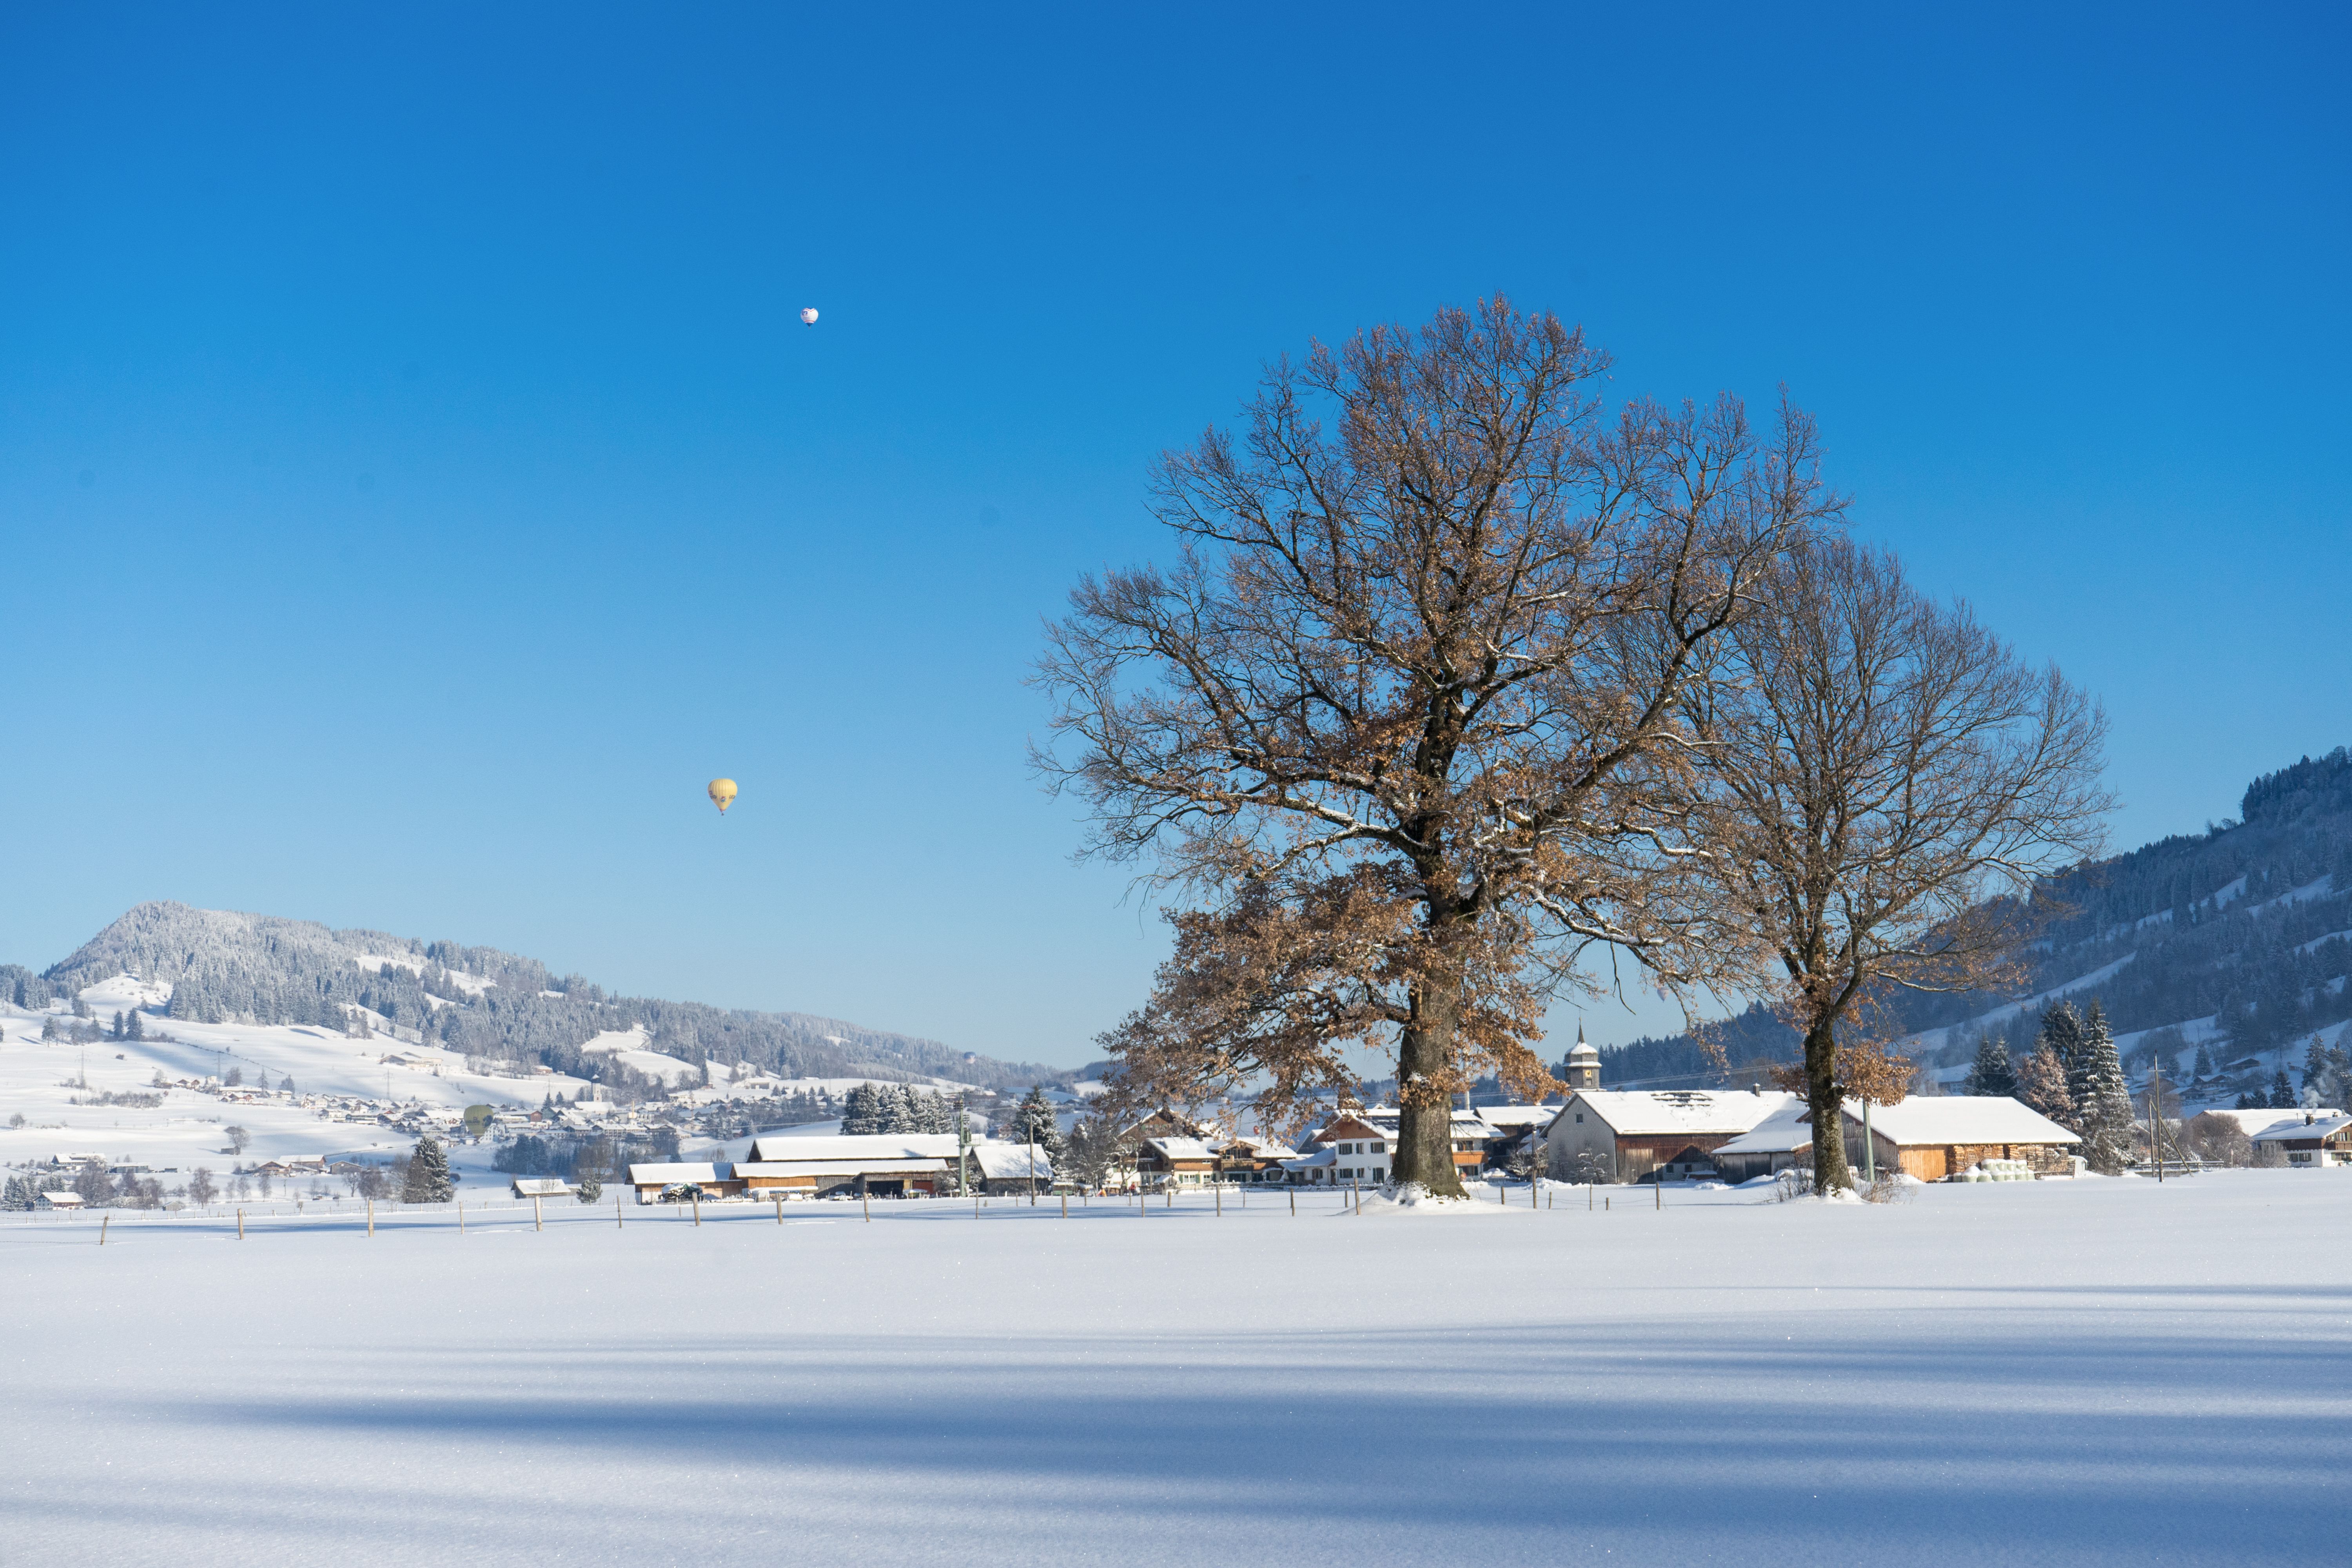 Der Burgberger Ortsteil Agathazell im Winter. Am Himmel schweben zwei Heißluftballons. Winterwanderer, Schneeschuhgeher und Langläufer kommen auf gut präparierten Wegen und Loipen in der Gemeinde Blaichach voll auf Ihre Kosten.